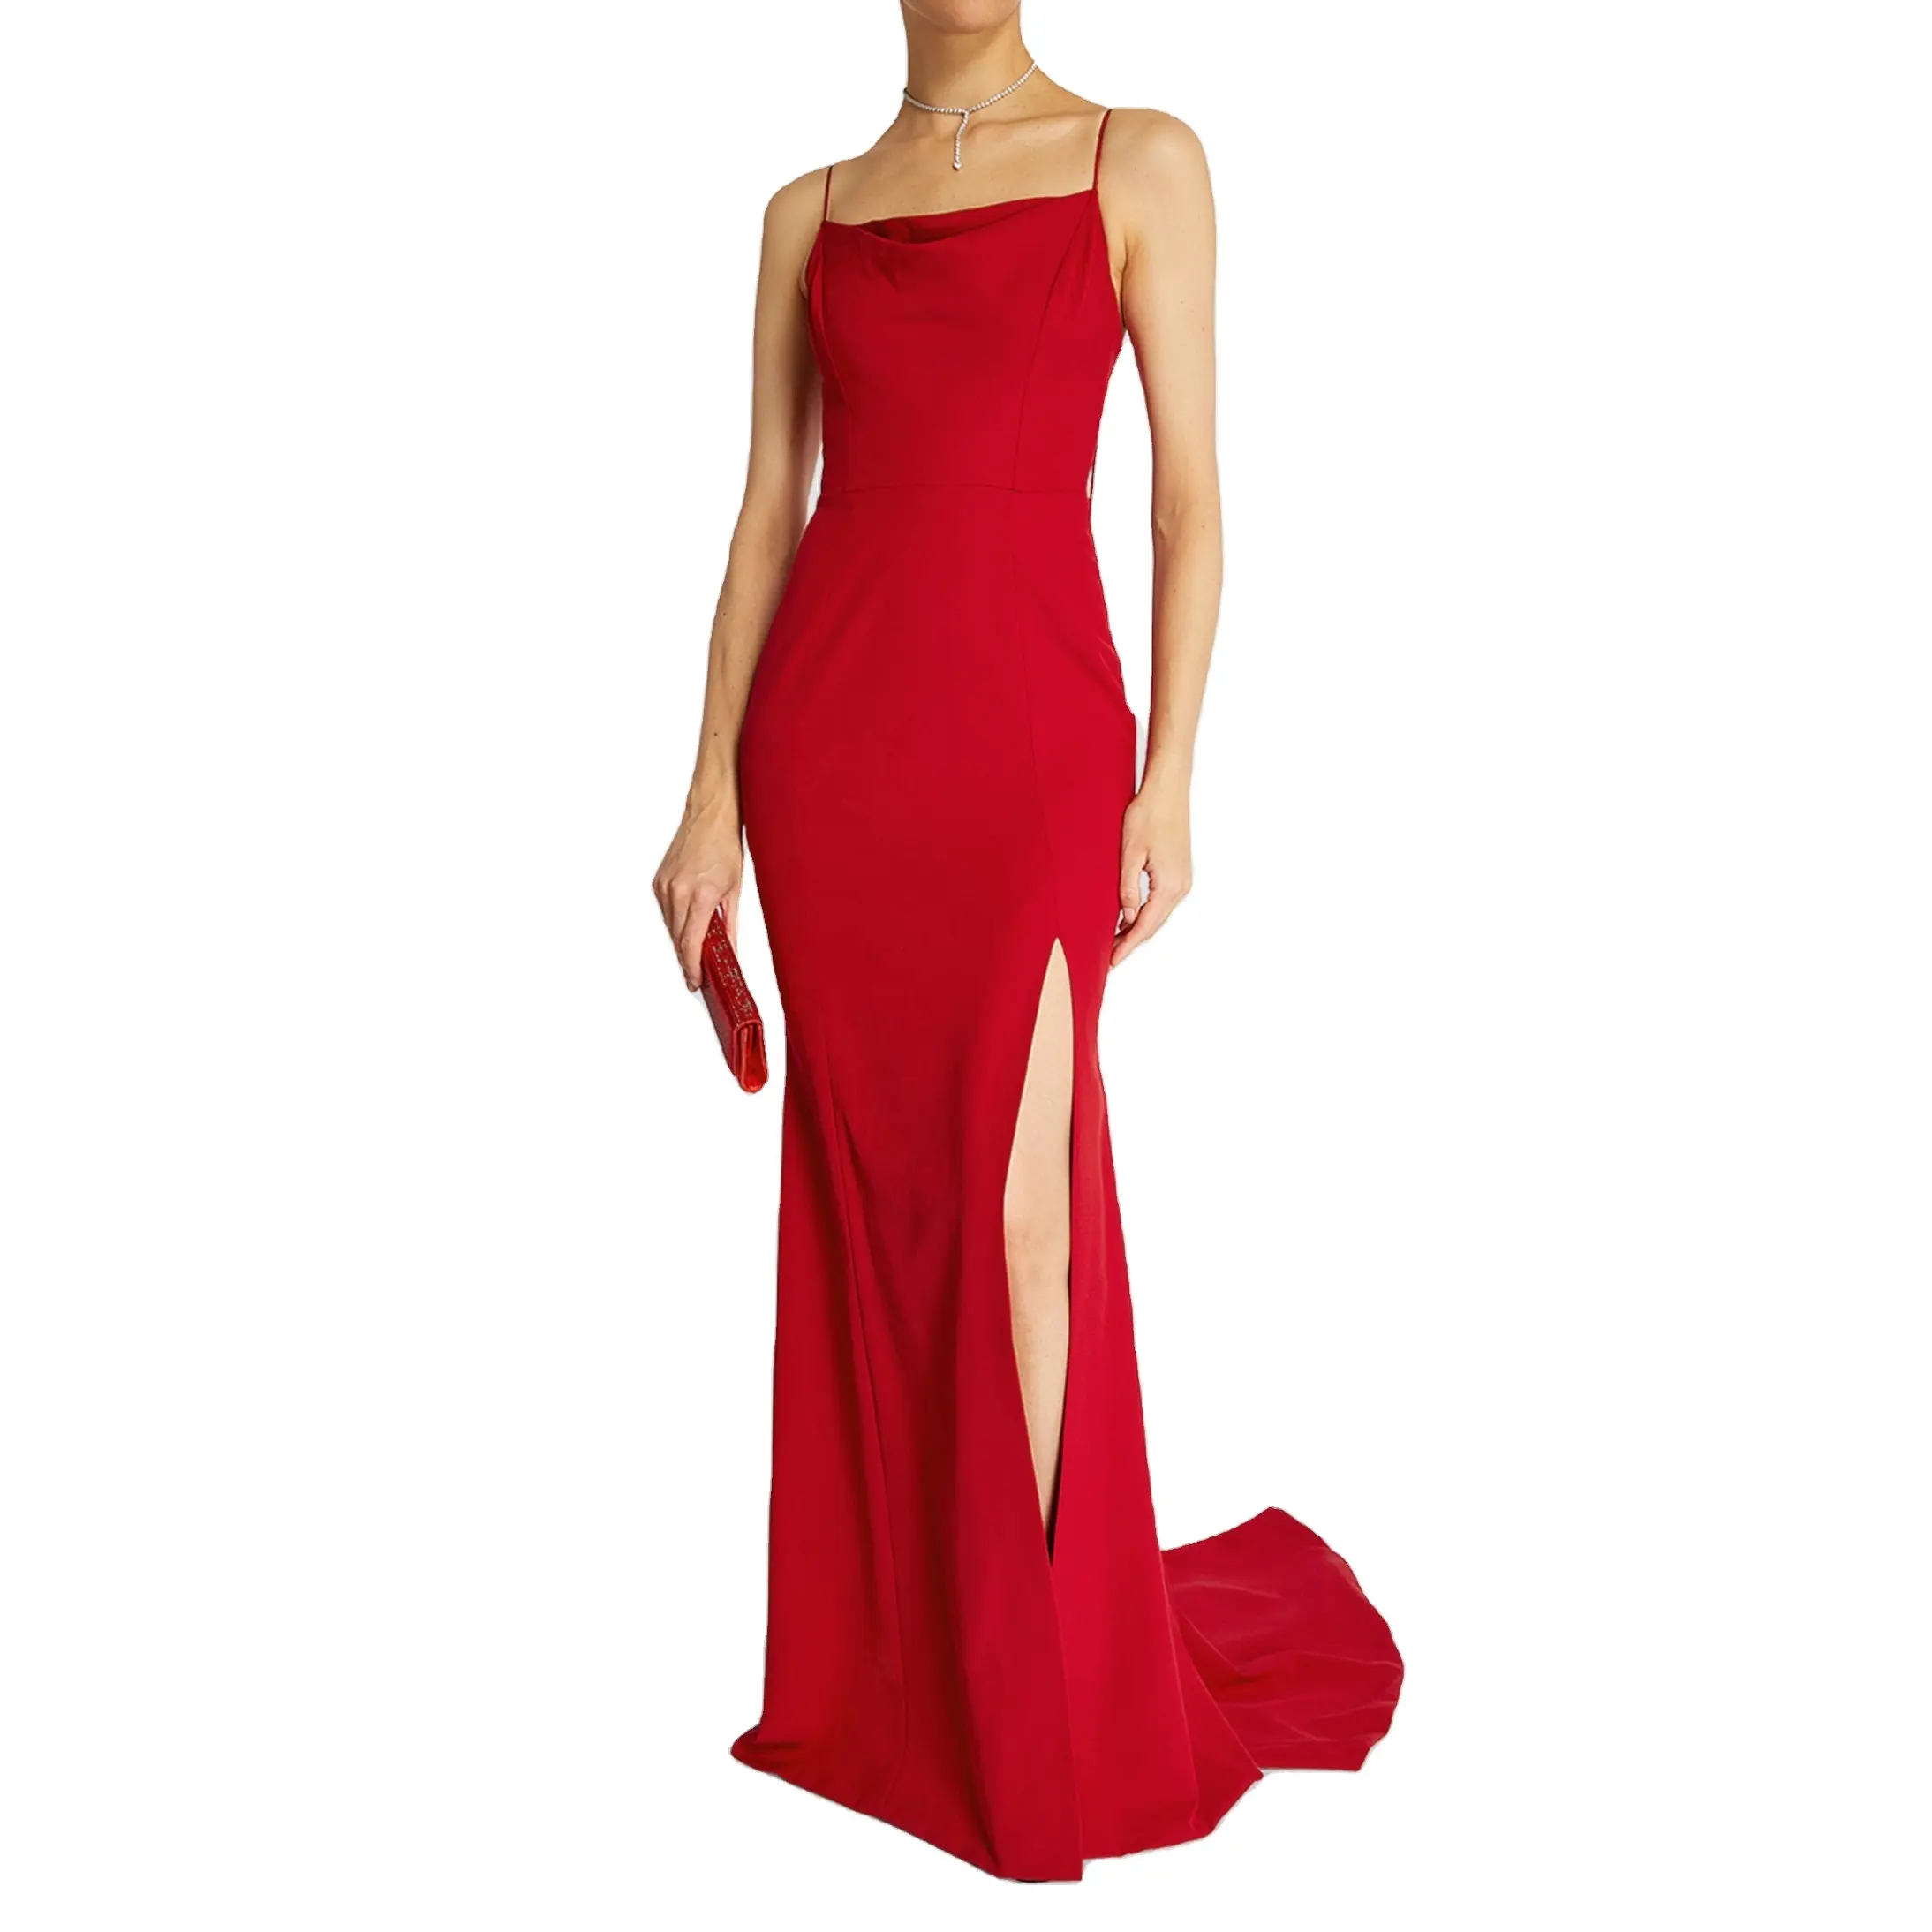 Frauen Red Silk Ball Kleid Low Back Elegante Seitens chlitz Sexy Fishtail Formale Damen Cocktail Party Kleid